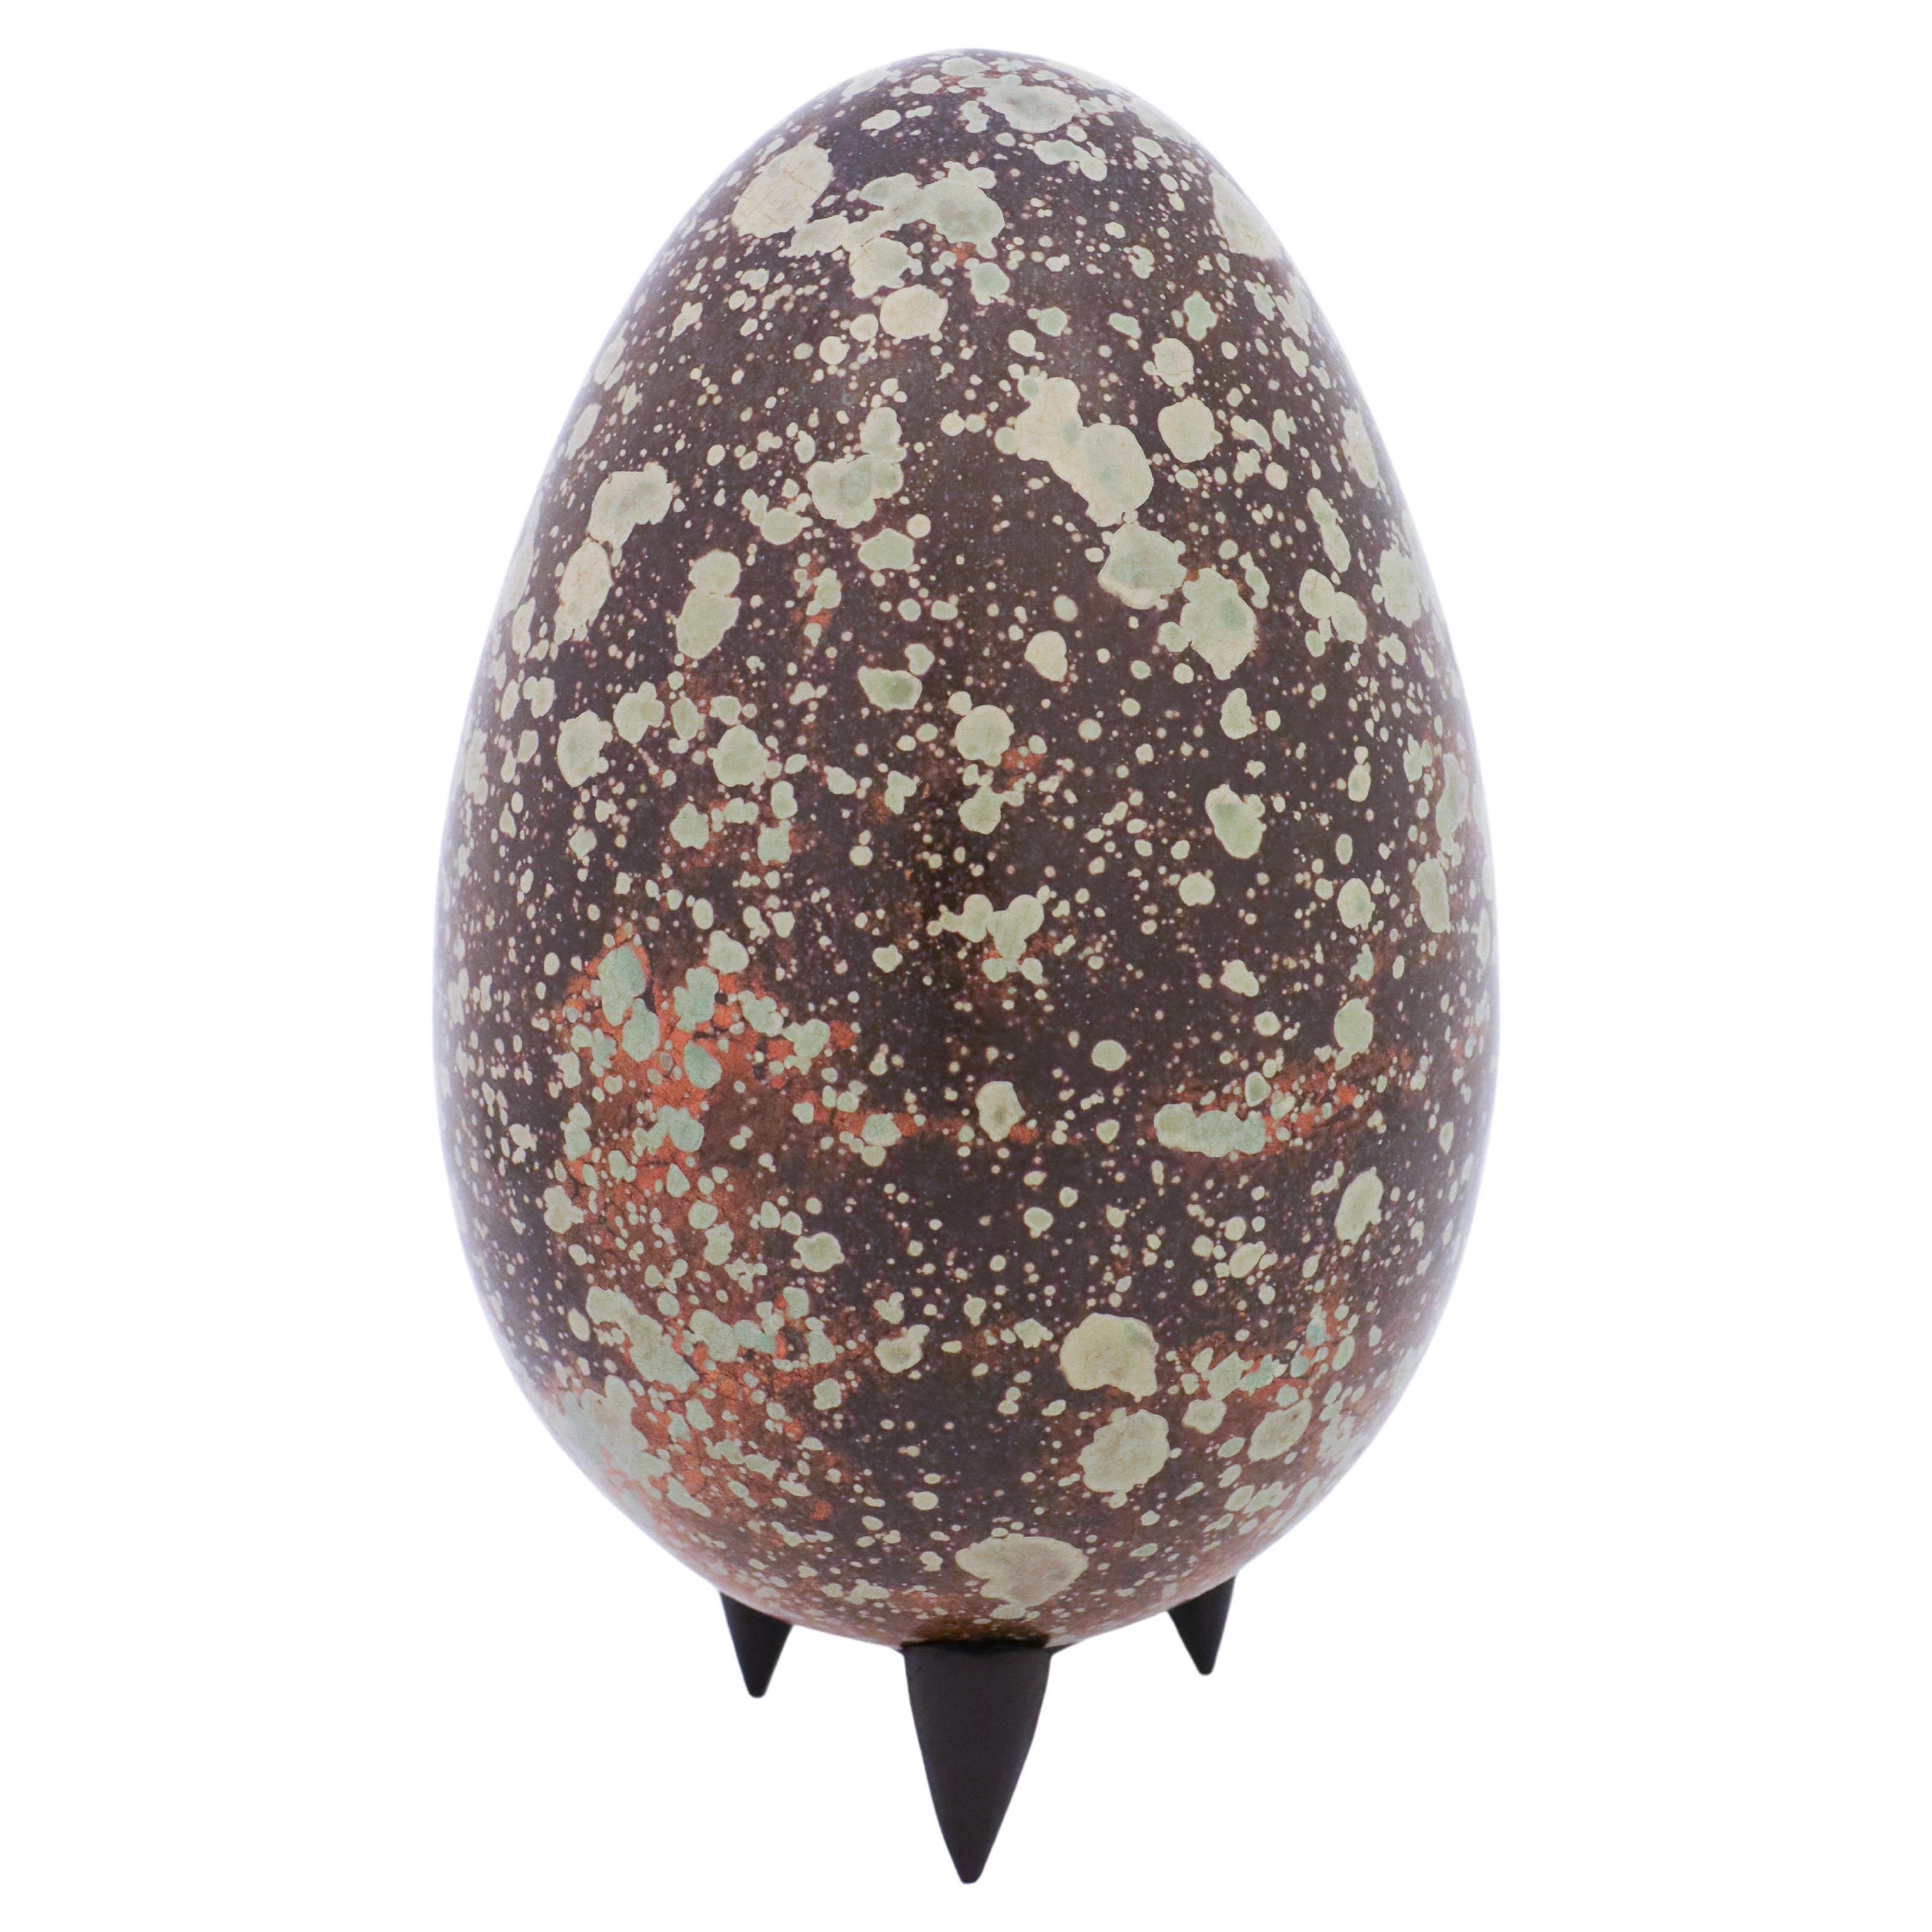 Ceramic Egg Holder, 12 Eggs - Turquoise Glaze